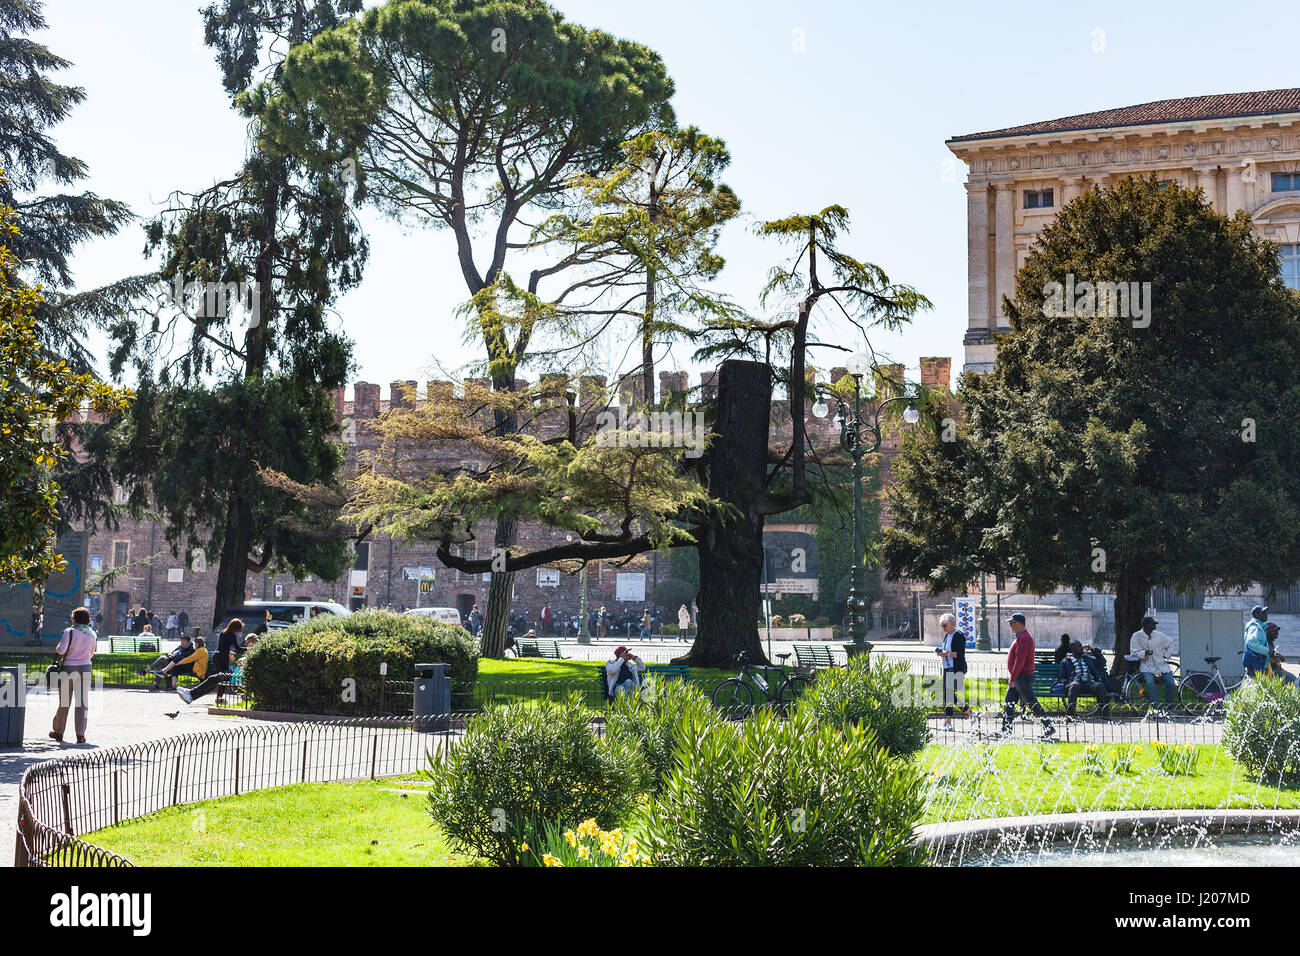 Vérone, ITALIE - 29 mars 2017 : les touristes en jardin sur la Piazza Bra à Vérone au printemps. La Piazza Bra (le soutien-gorge) est la plus grande place dans la ville Banque D'Images